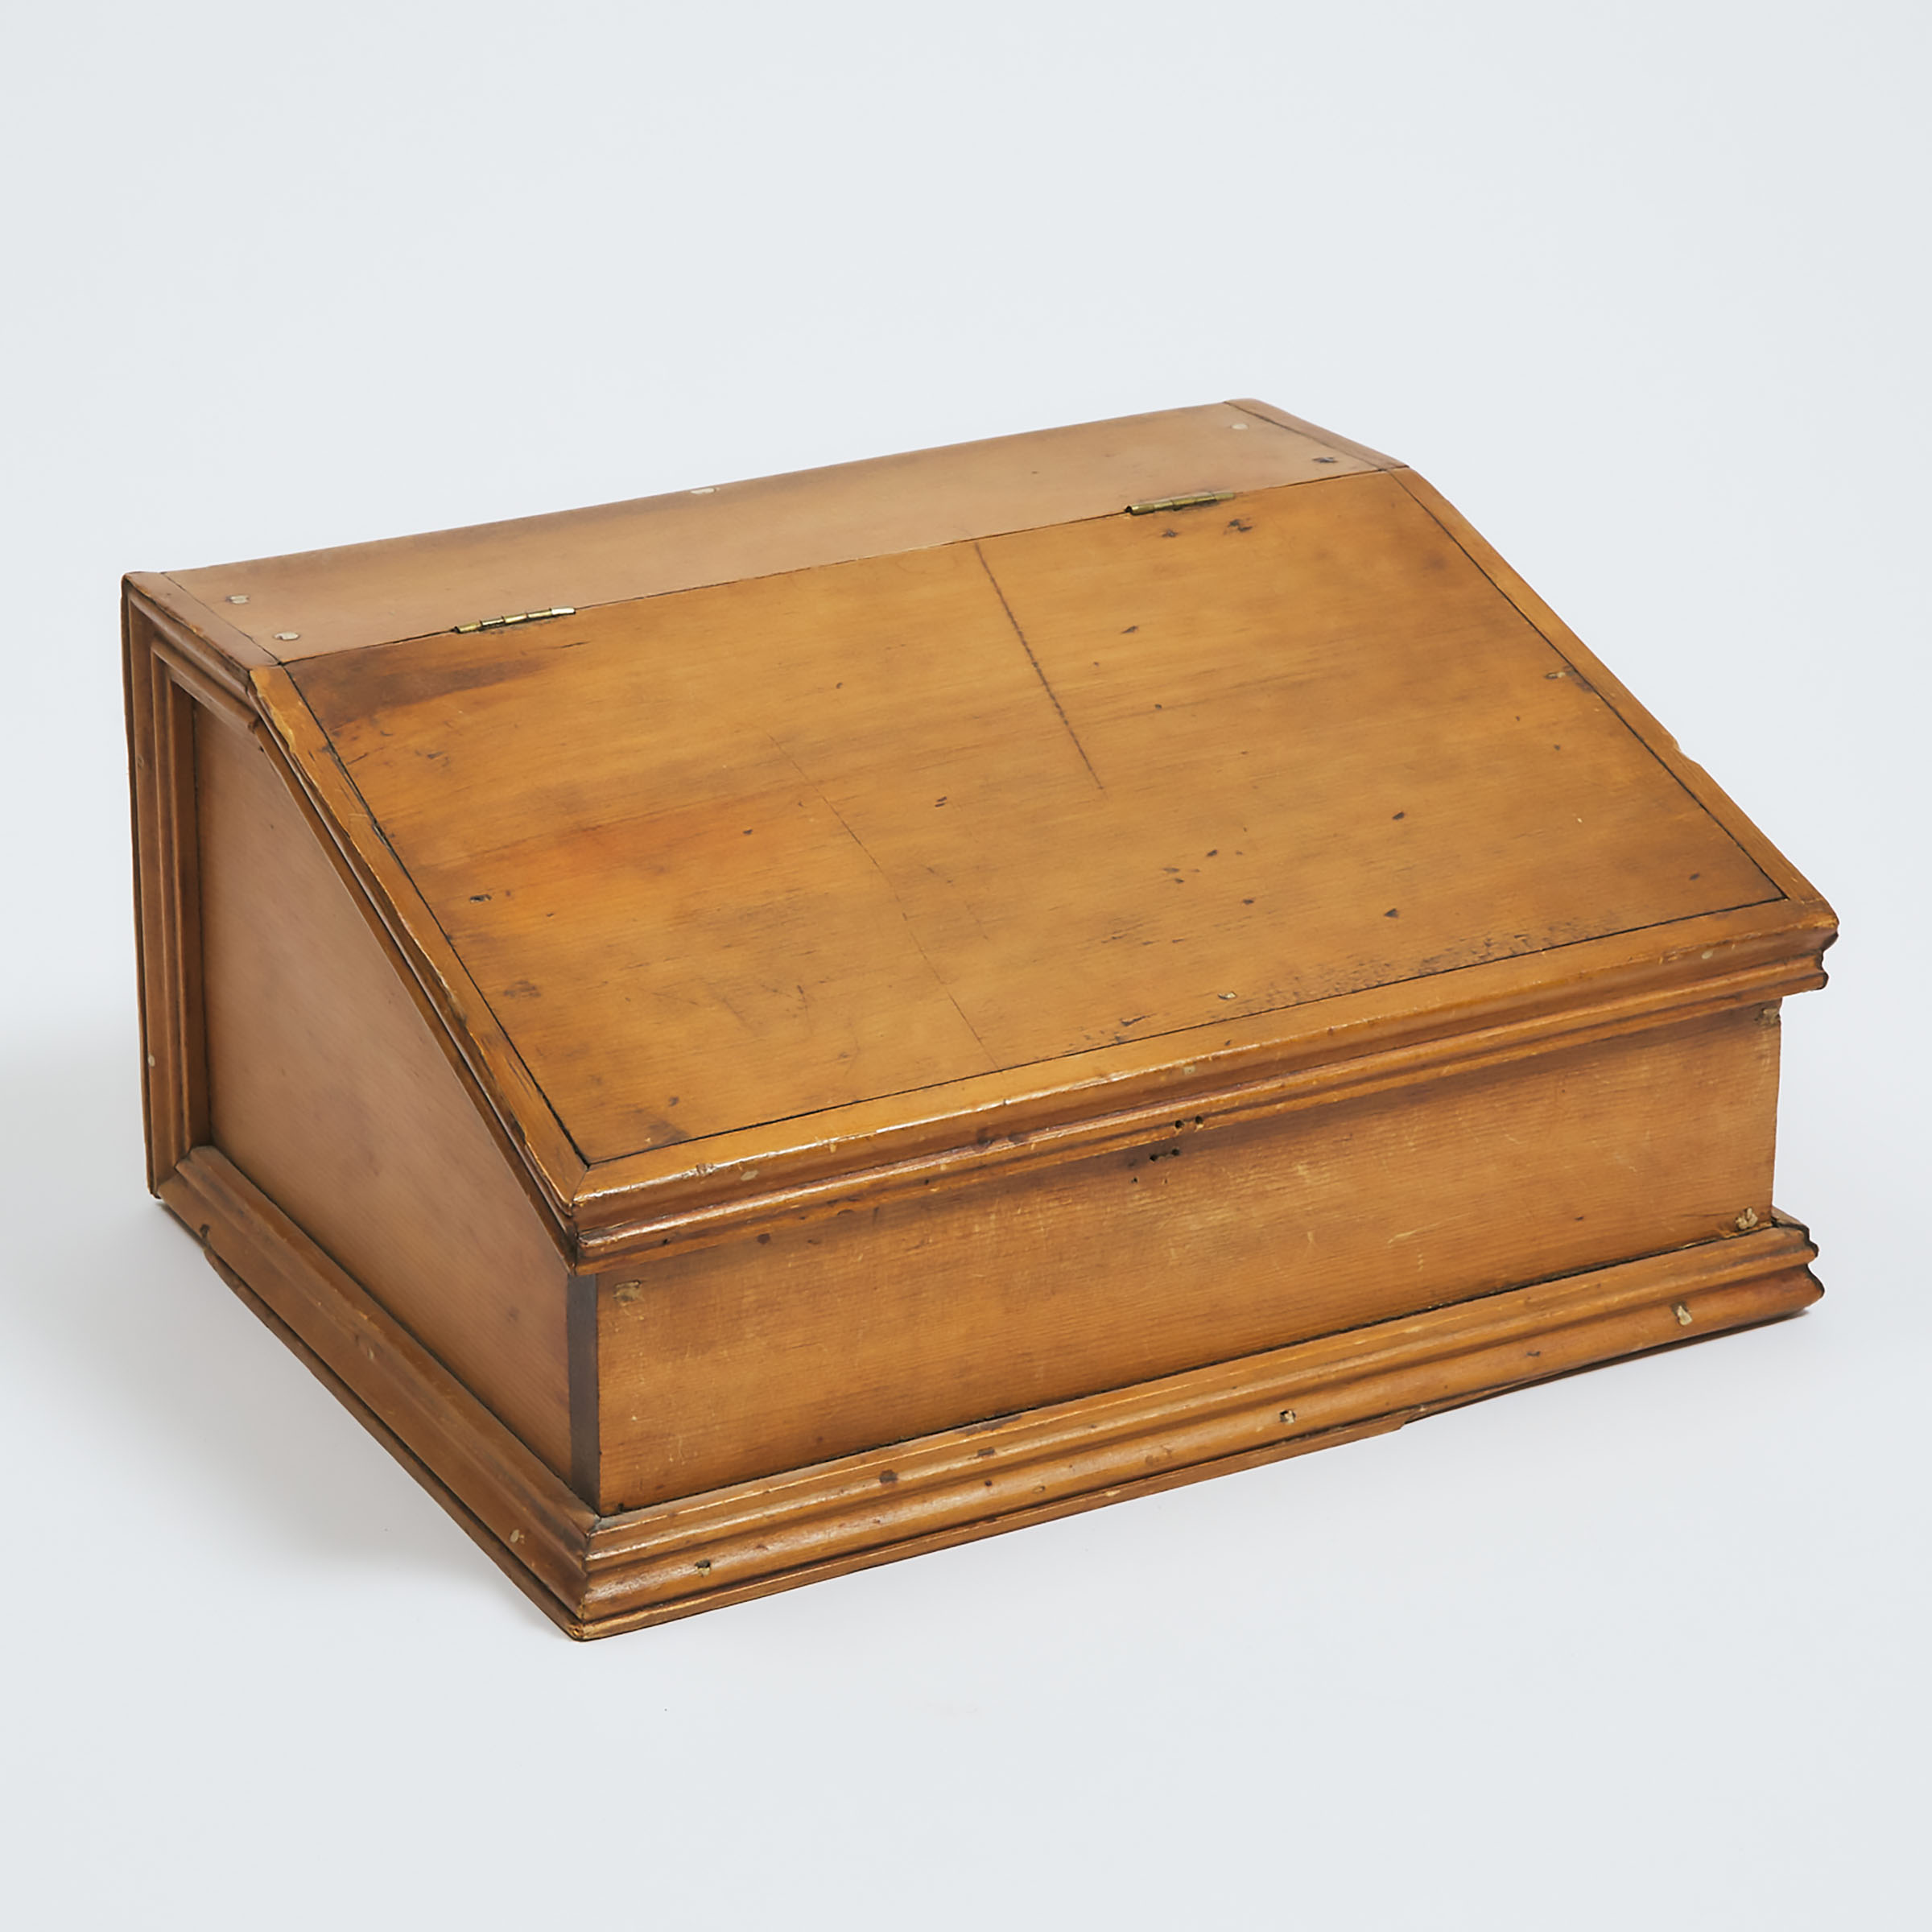 Quebec Pine Document Box c 1850 3ac3aa